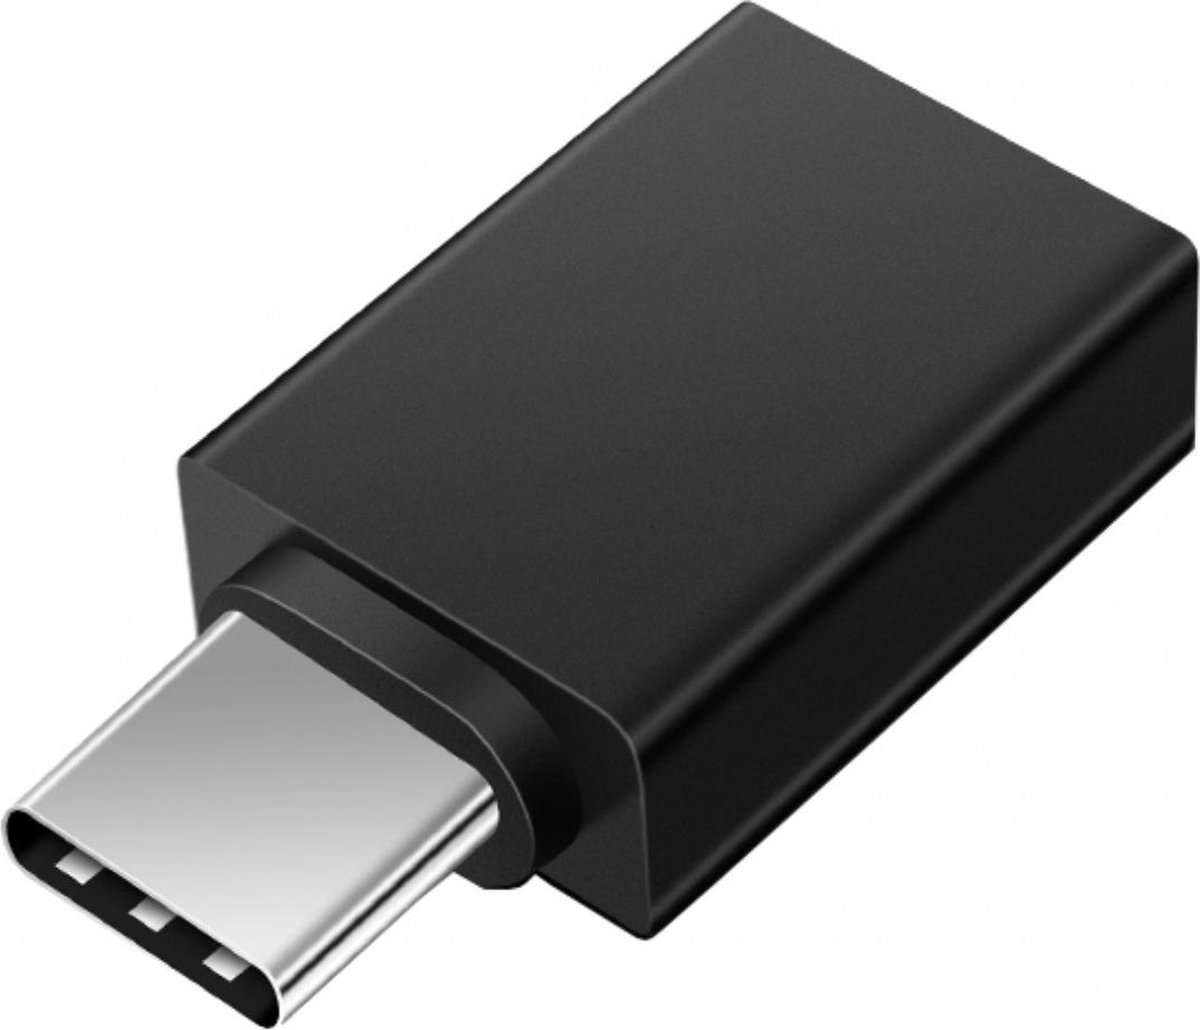 USB C naar USB 3.0 Adapter voor MacBook, Telefoon, Android, en iPad Pro - Supersnel! (Zwart) - Vibfy